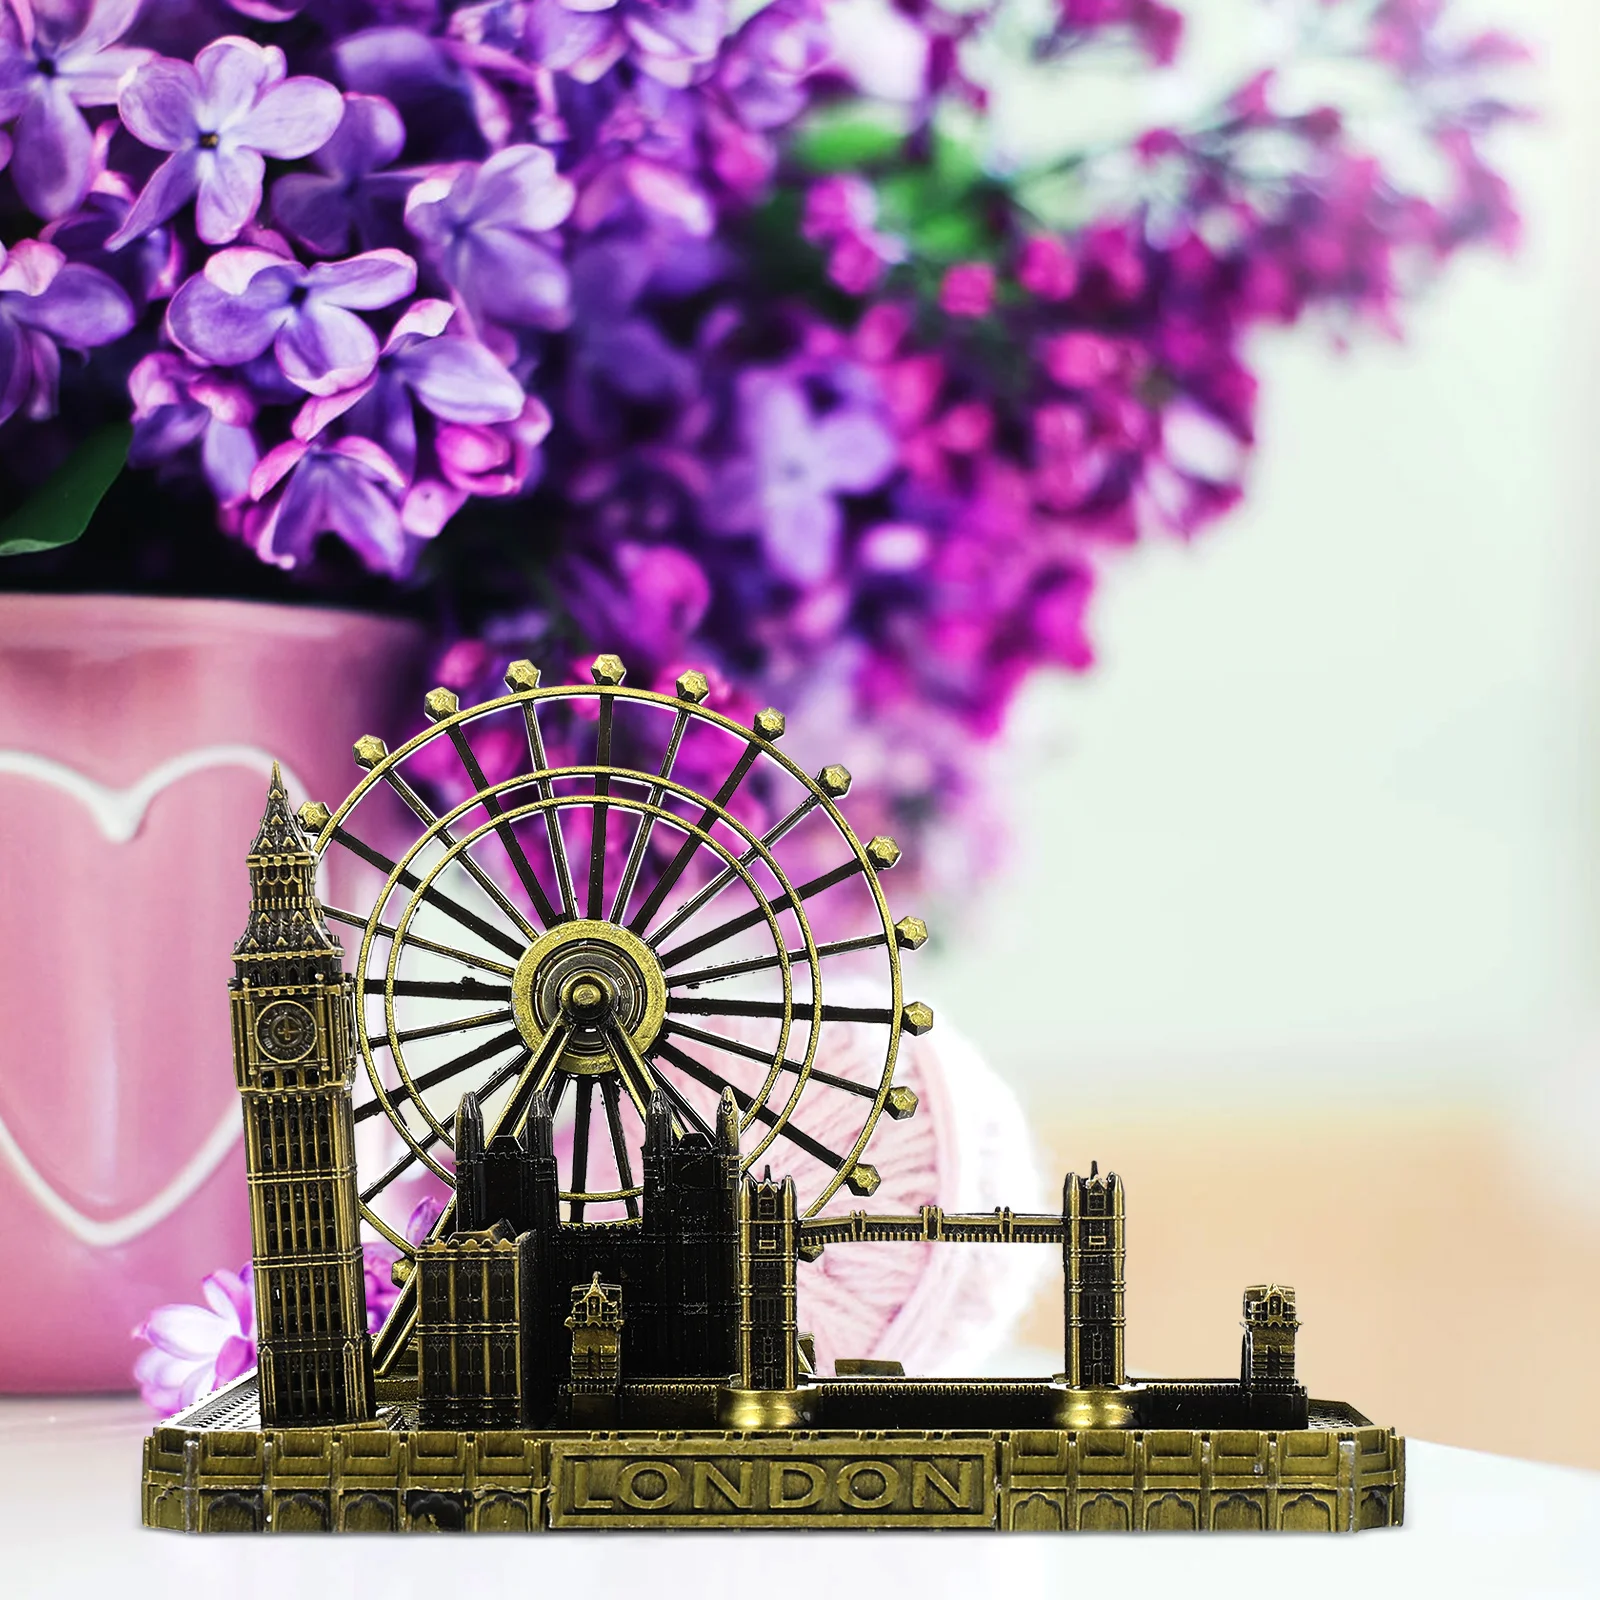 Modelo de Londres, torre, puente, ciudad, famoso Big Ben, arquitectura, reloj Digital, estatuilla, estatua, escultura británica